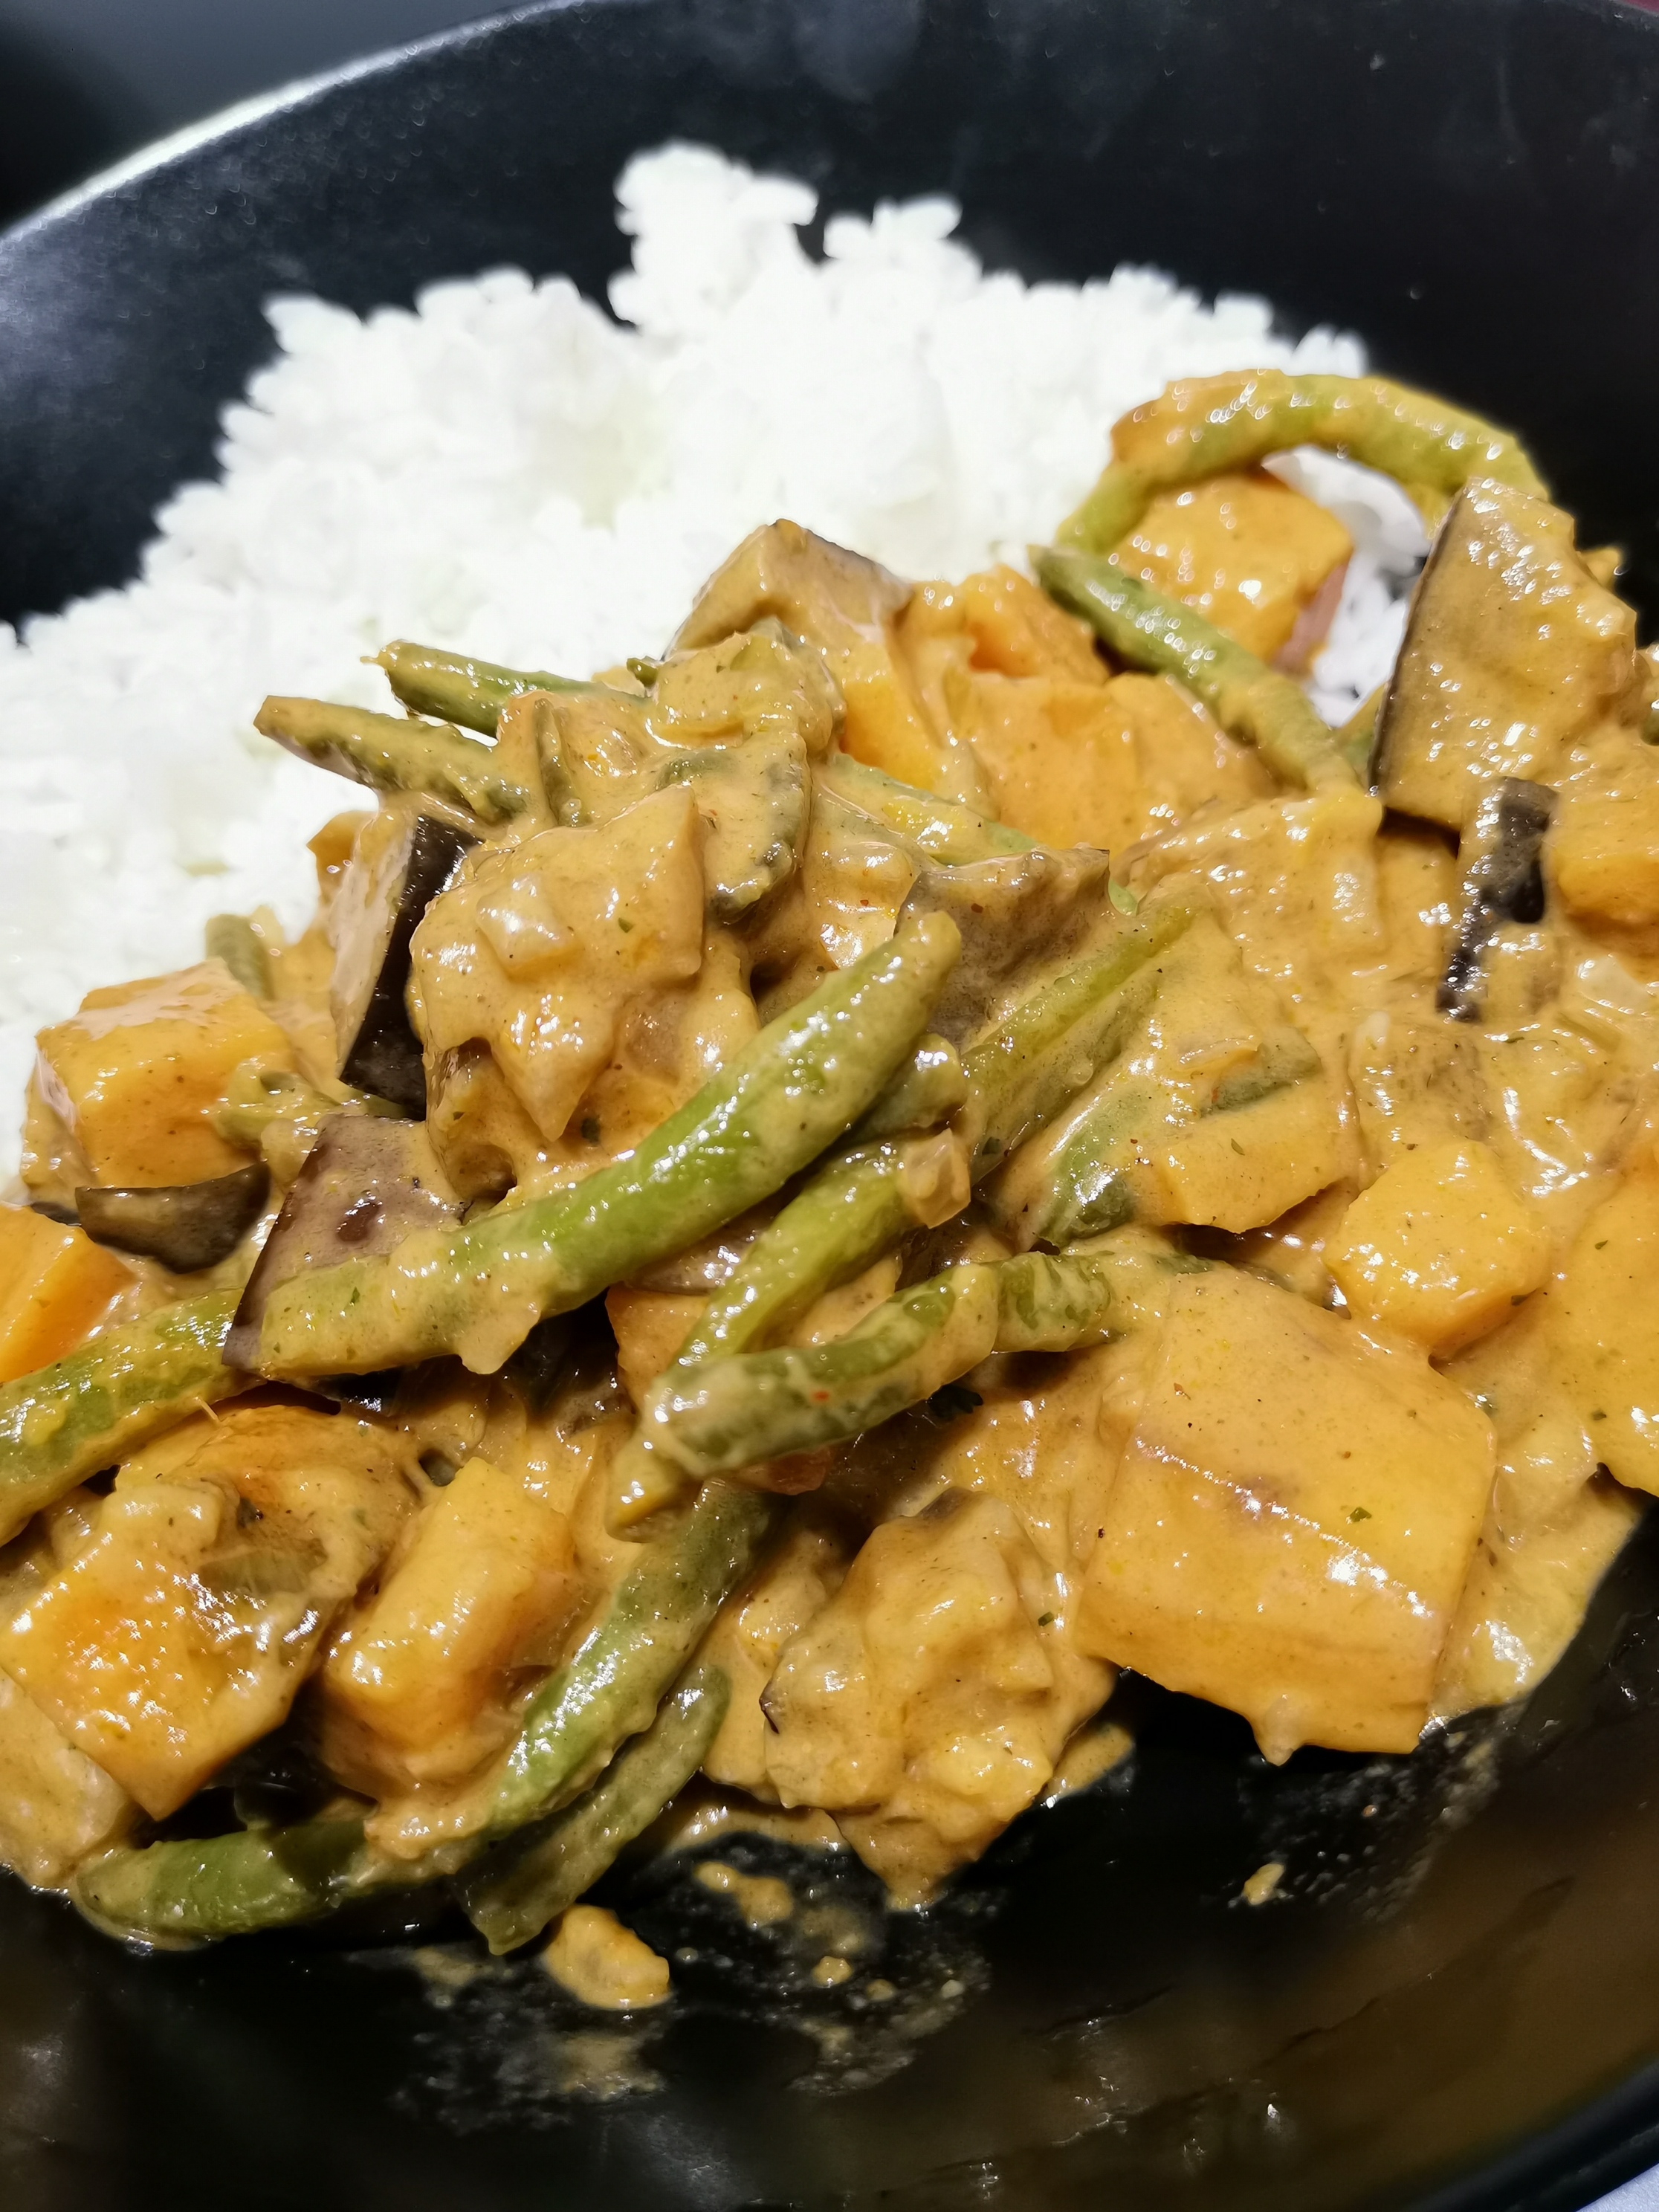 印度素咖喱 - 茄子/红薯/豆角 Indian Vegetable Curry